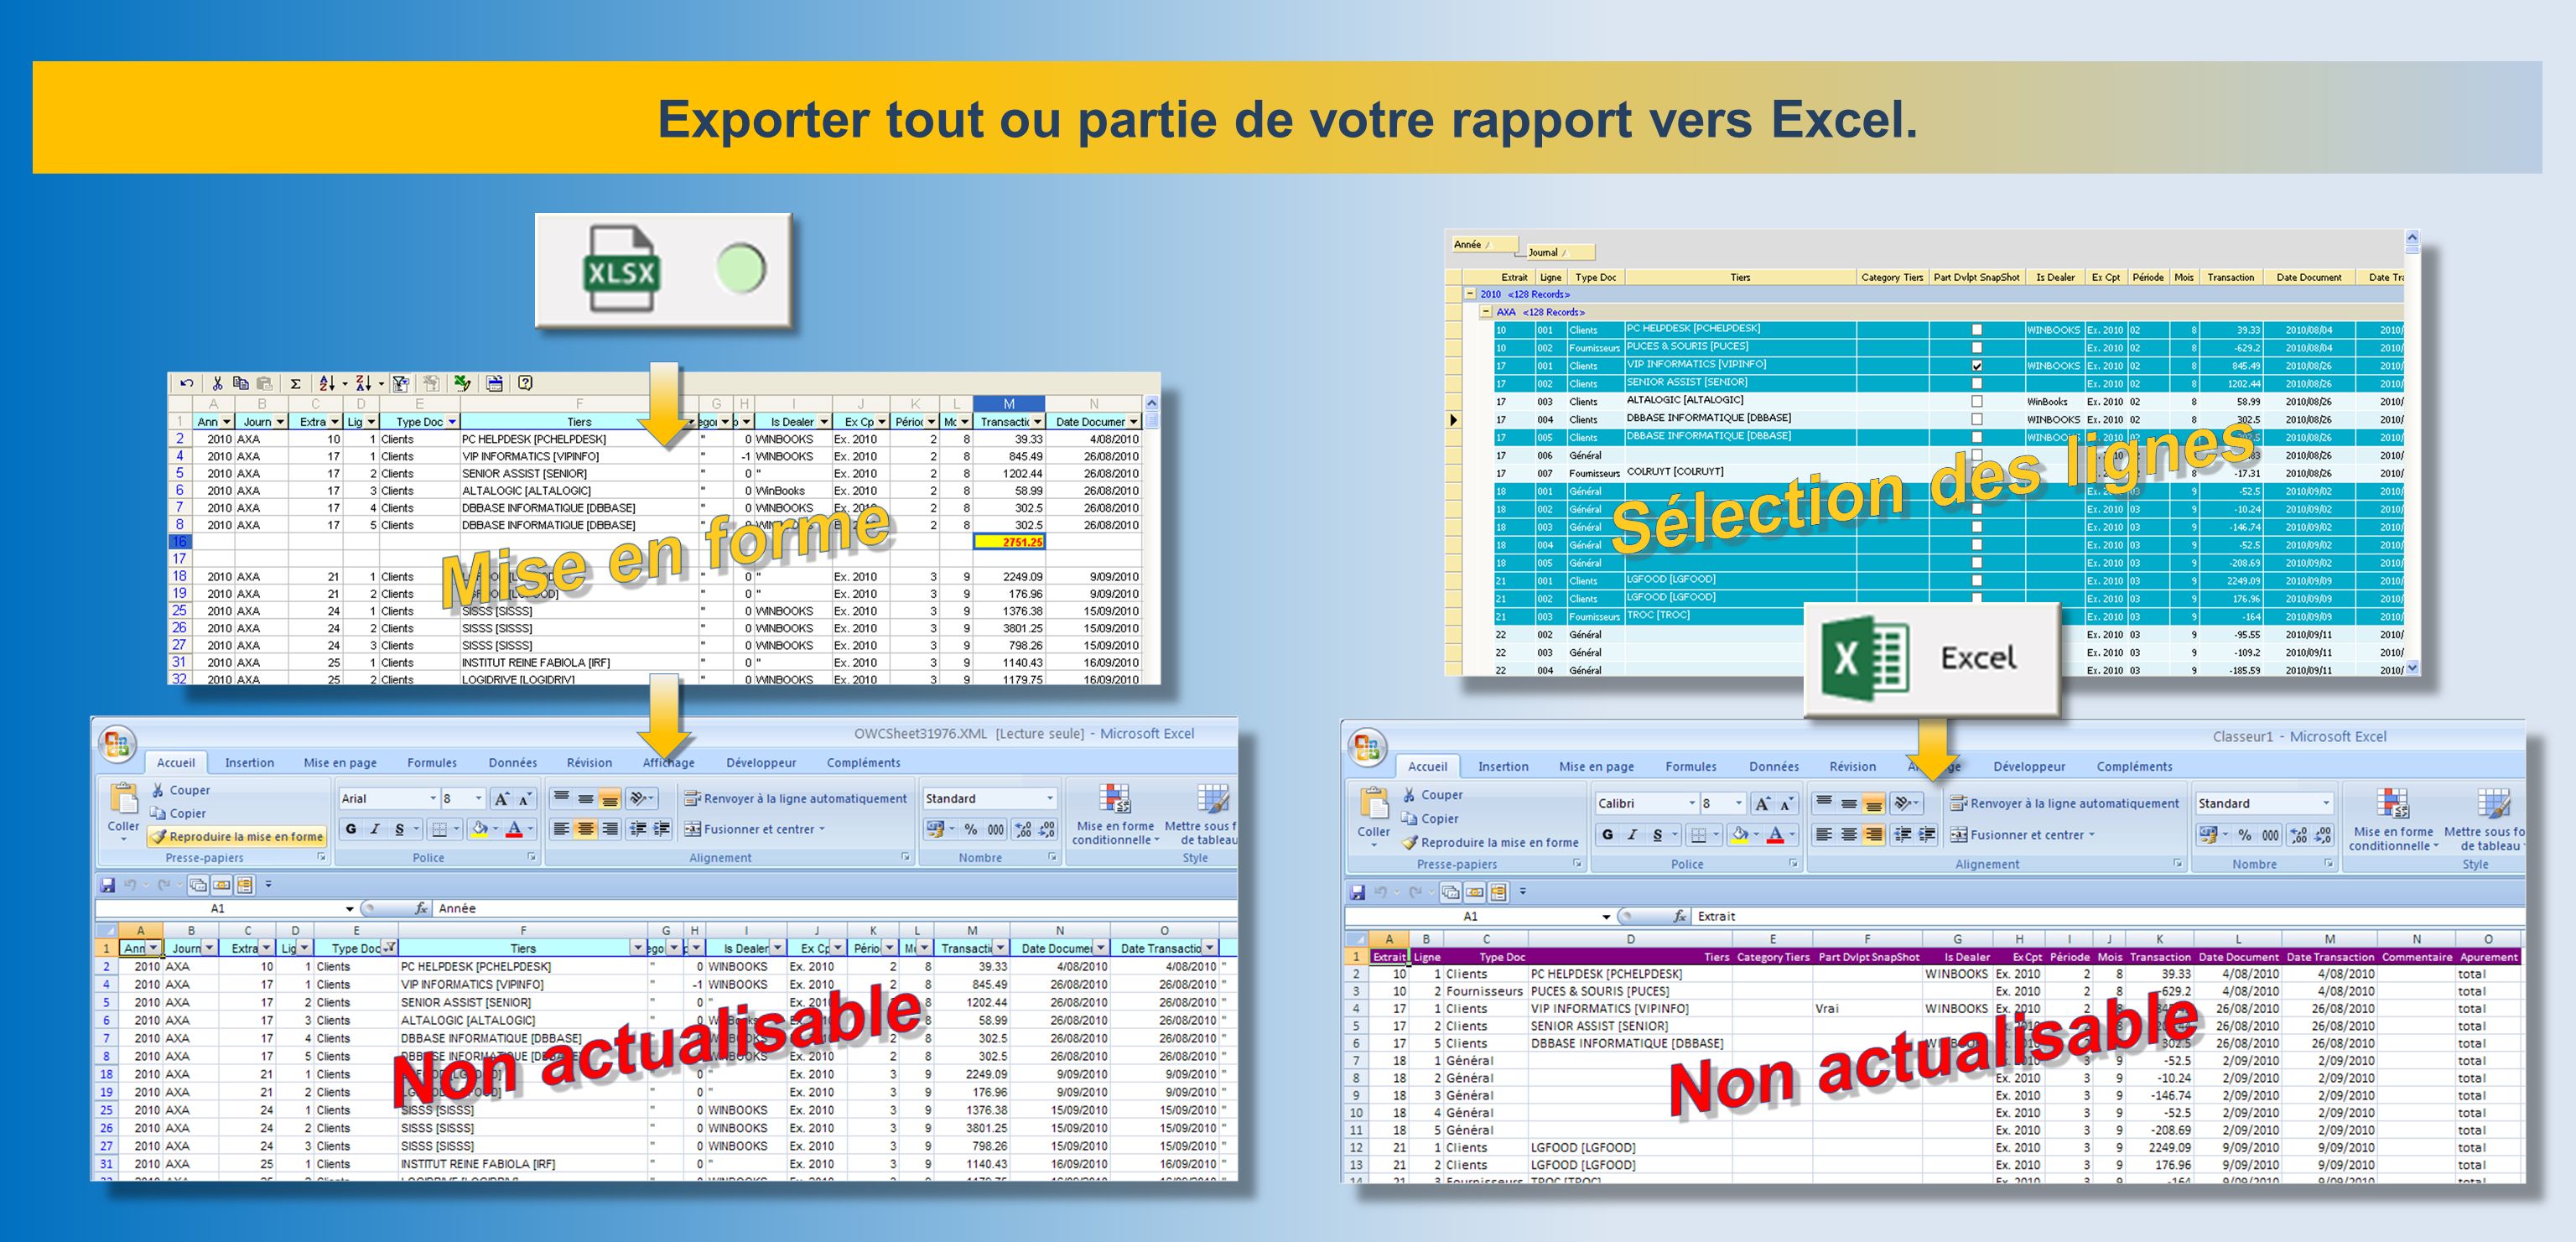 Exporter tout ou partie de votre rapport vers Excel.